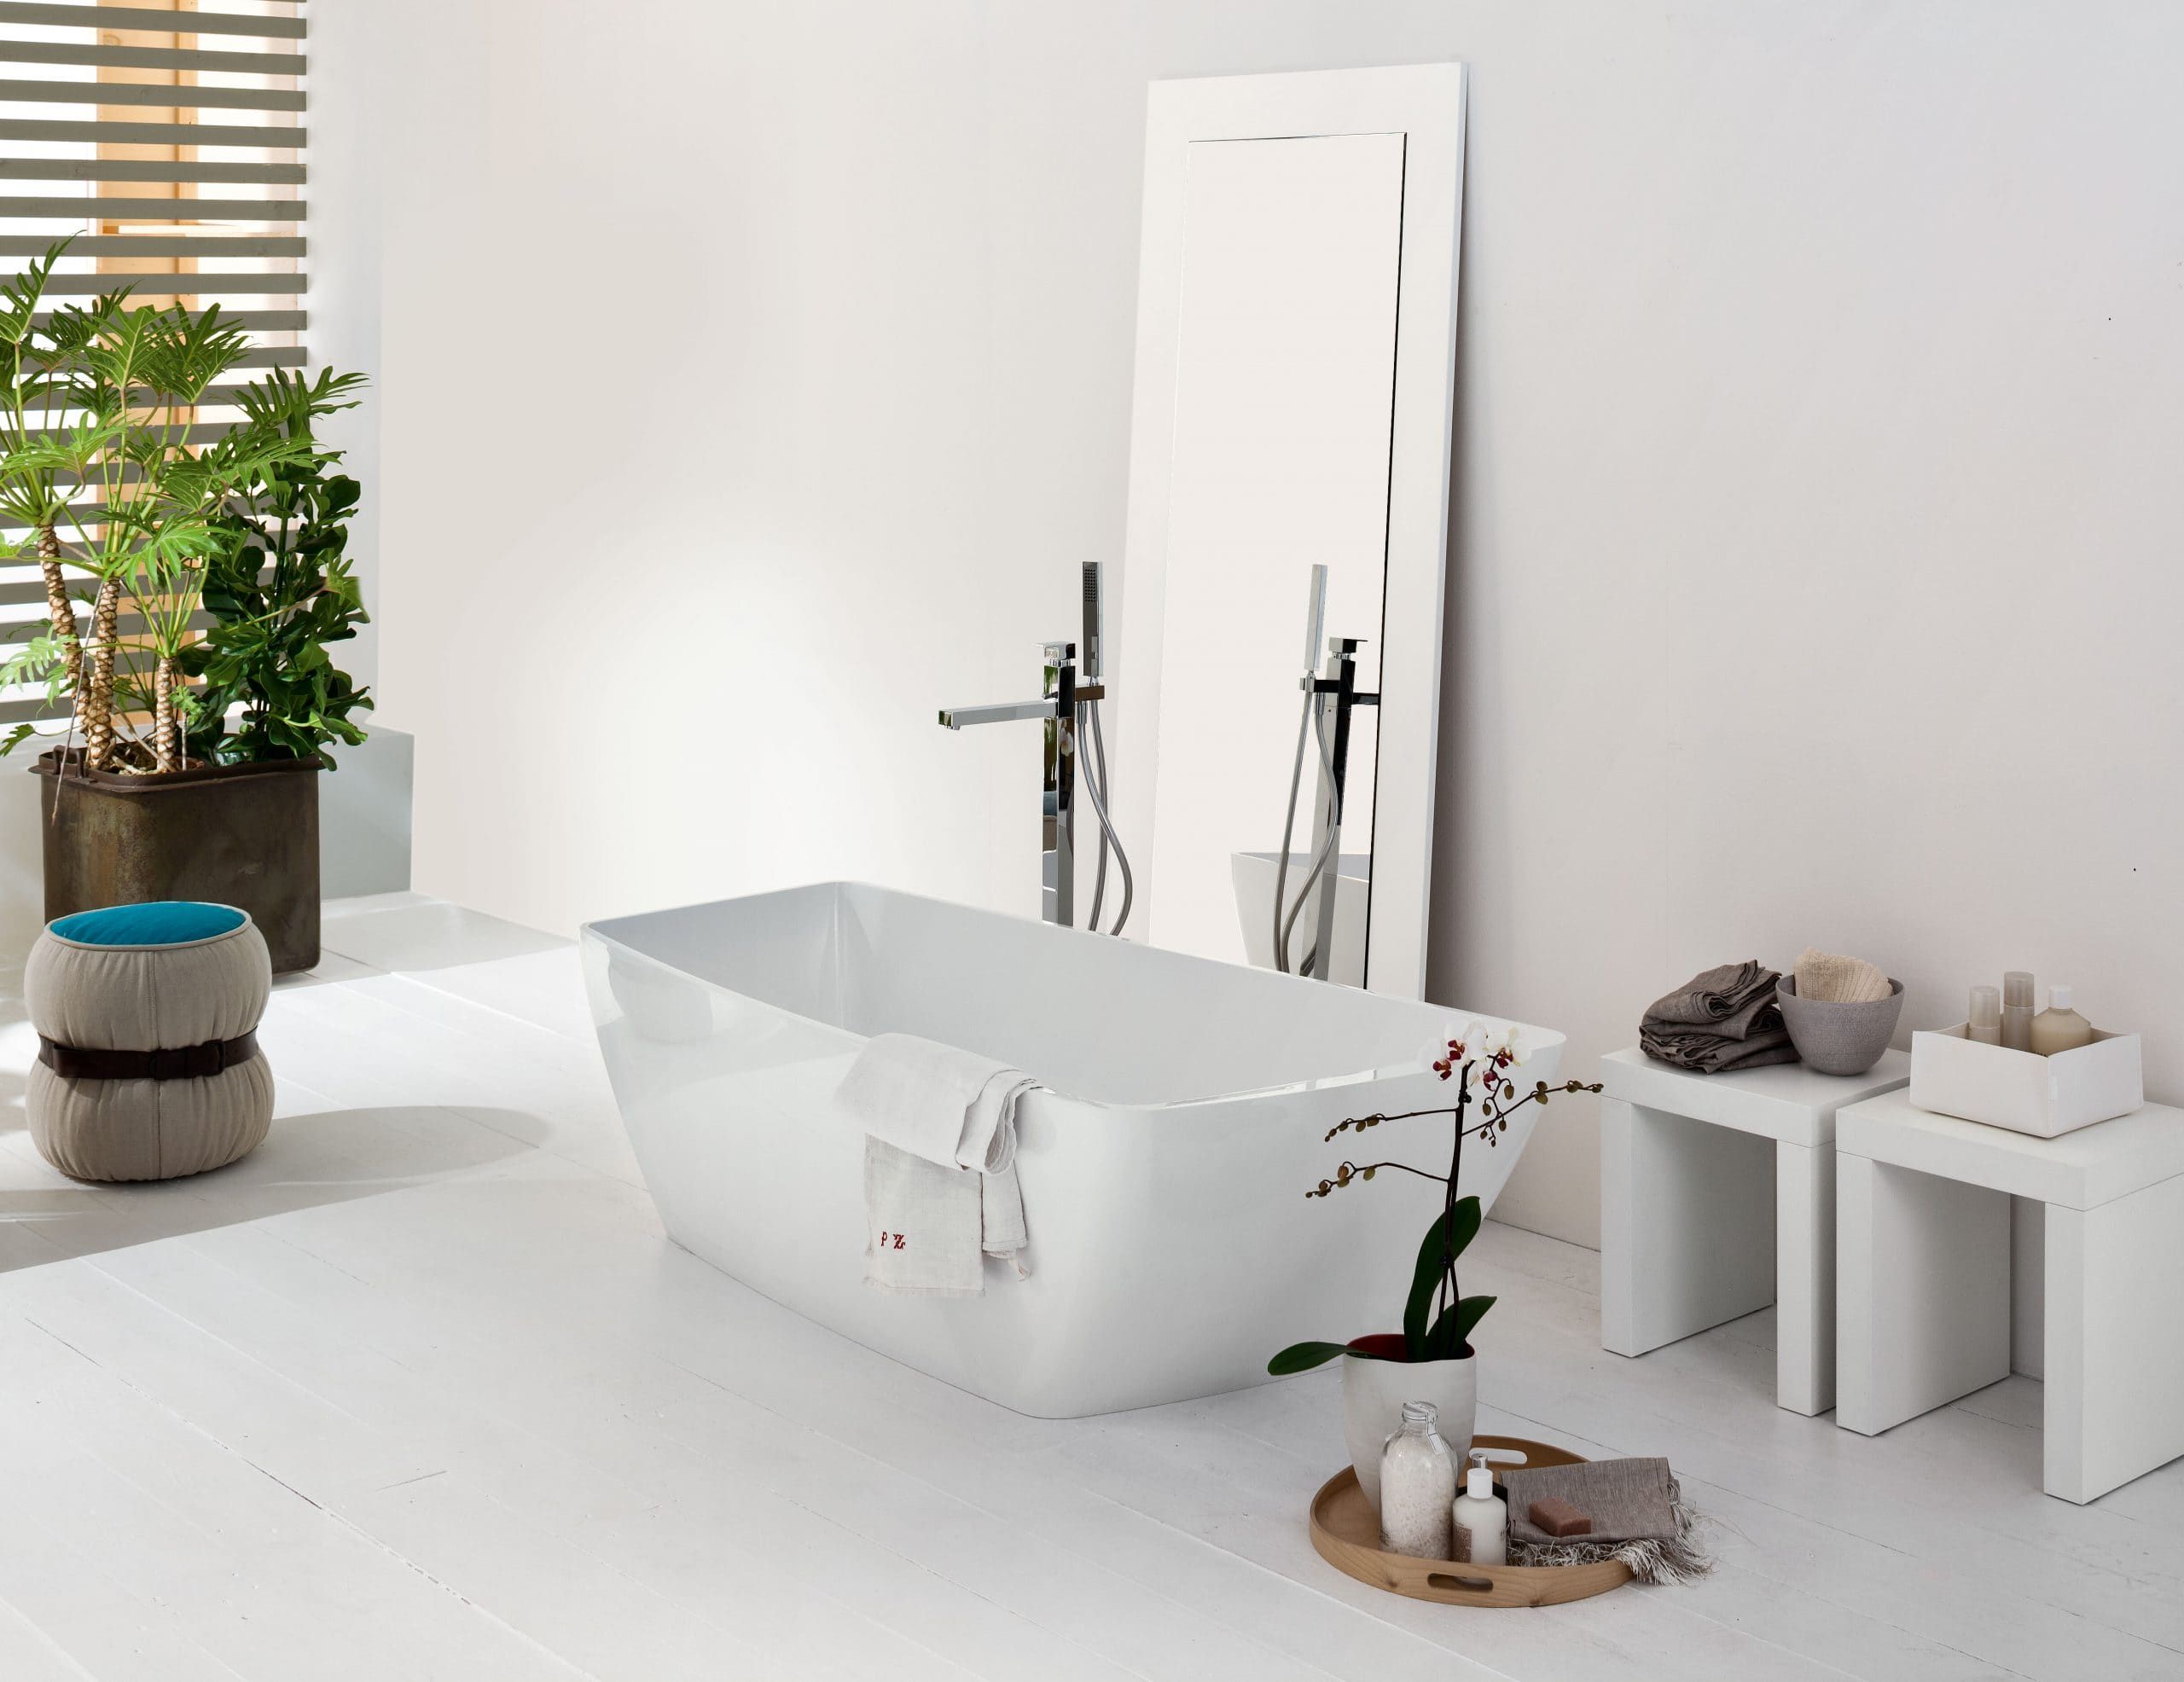 Yole modern luxury bathtub with white resin